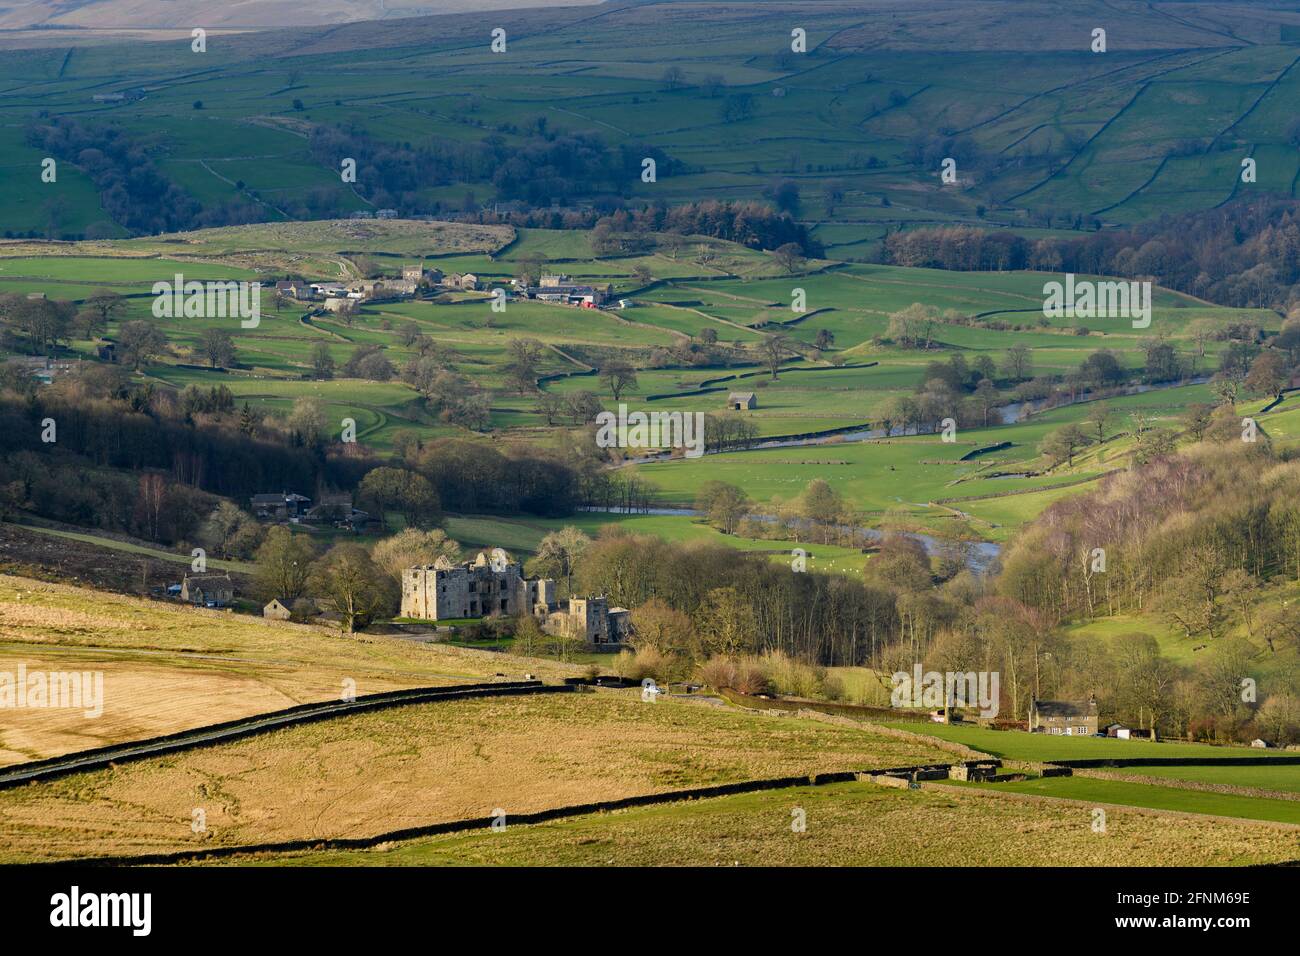 Vue panoramique sur la campagne de Wharfedale (large vallée verdoyante, collines ondoyantes, hautes collines et ruines de la tour de jardin illuminée) - Yorkshire Dales, Angleterre, Royaume-Uni. Banque D'Images